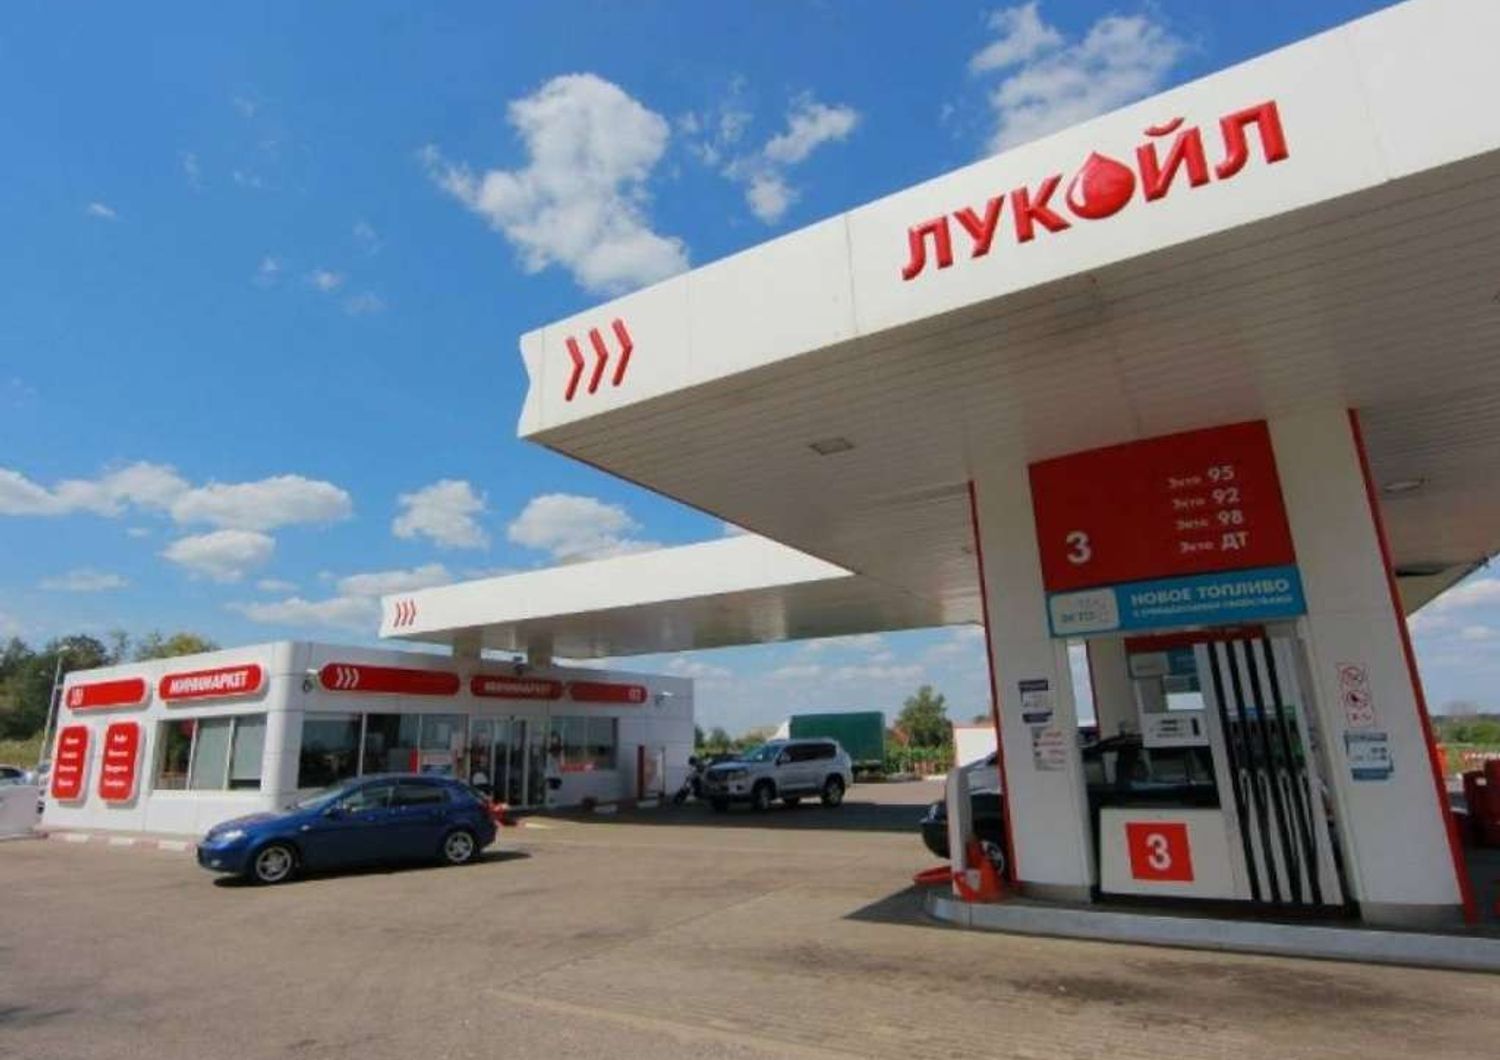 La russa Lukoil si libera dei distributori in Ucraina, affare da 300 milioni